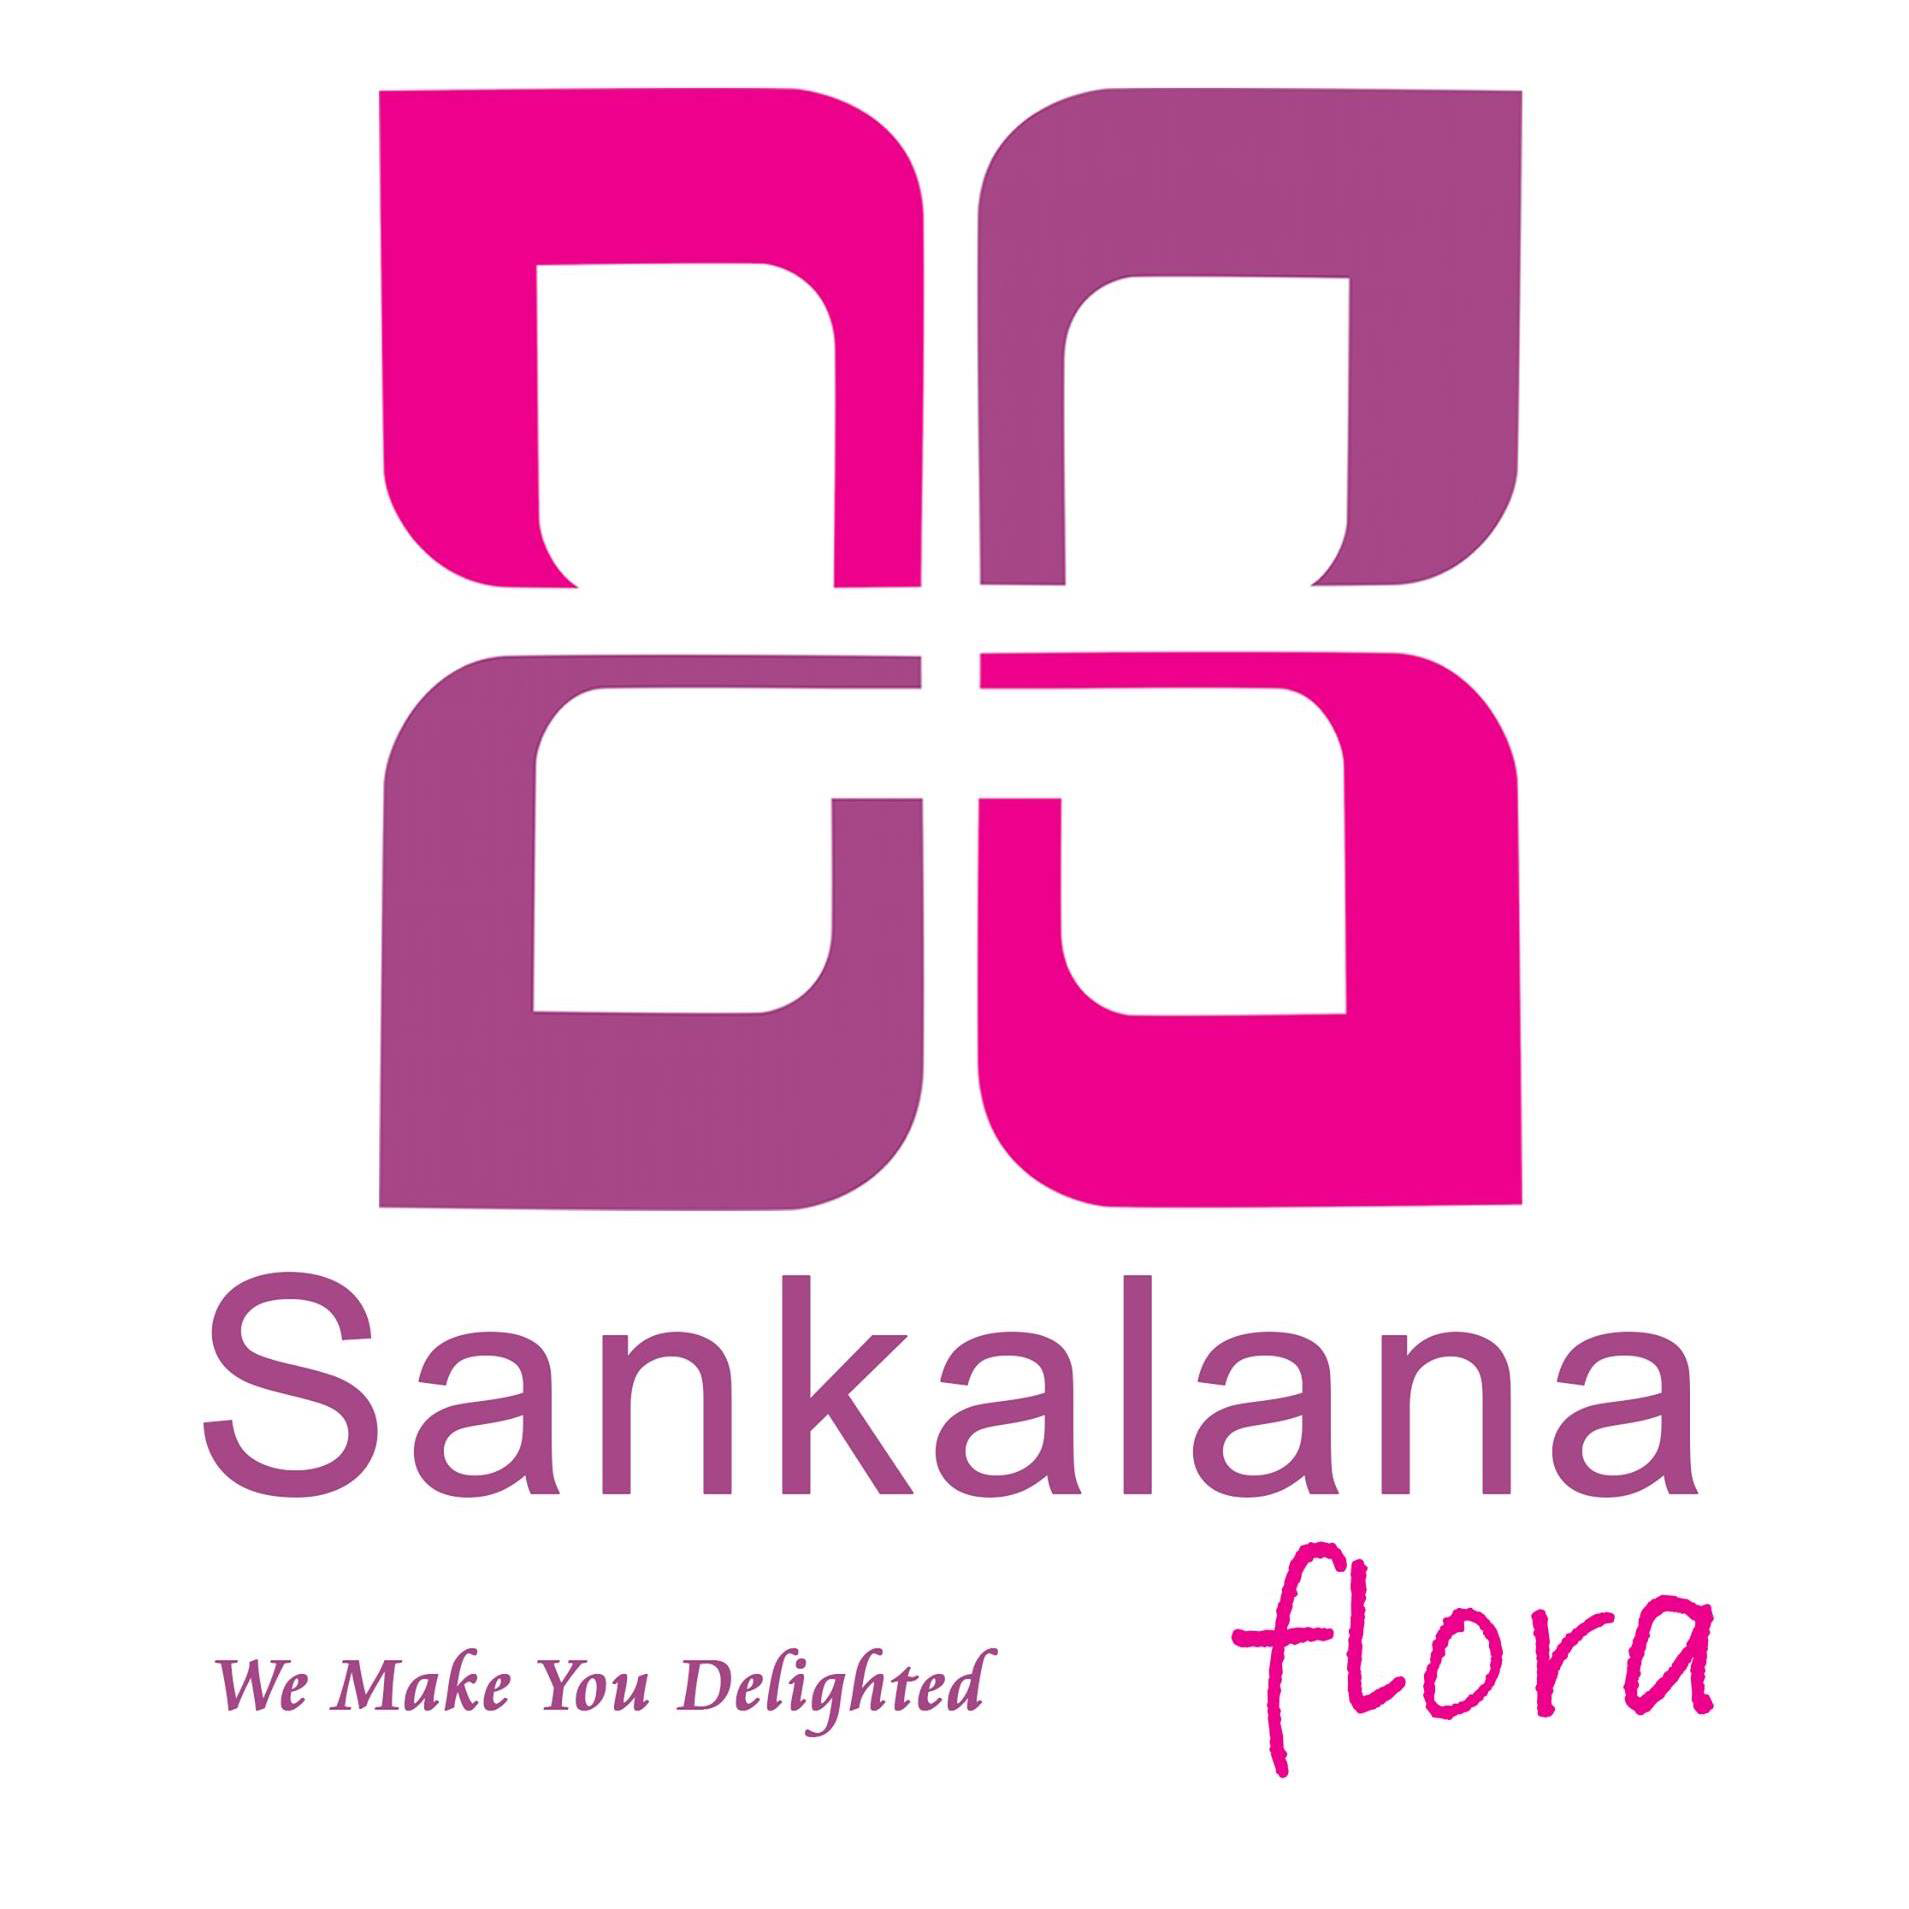 Sankalana Flora